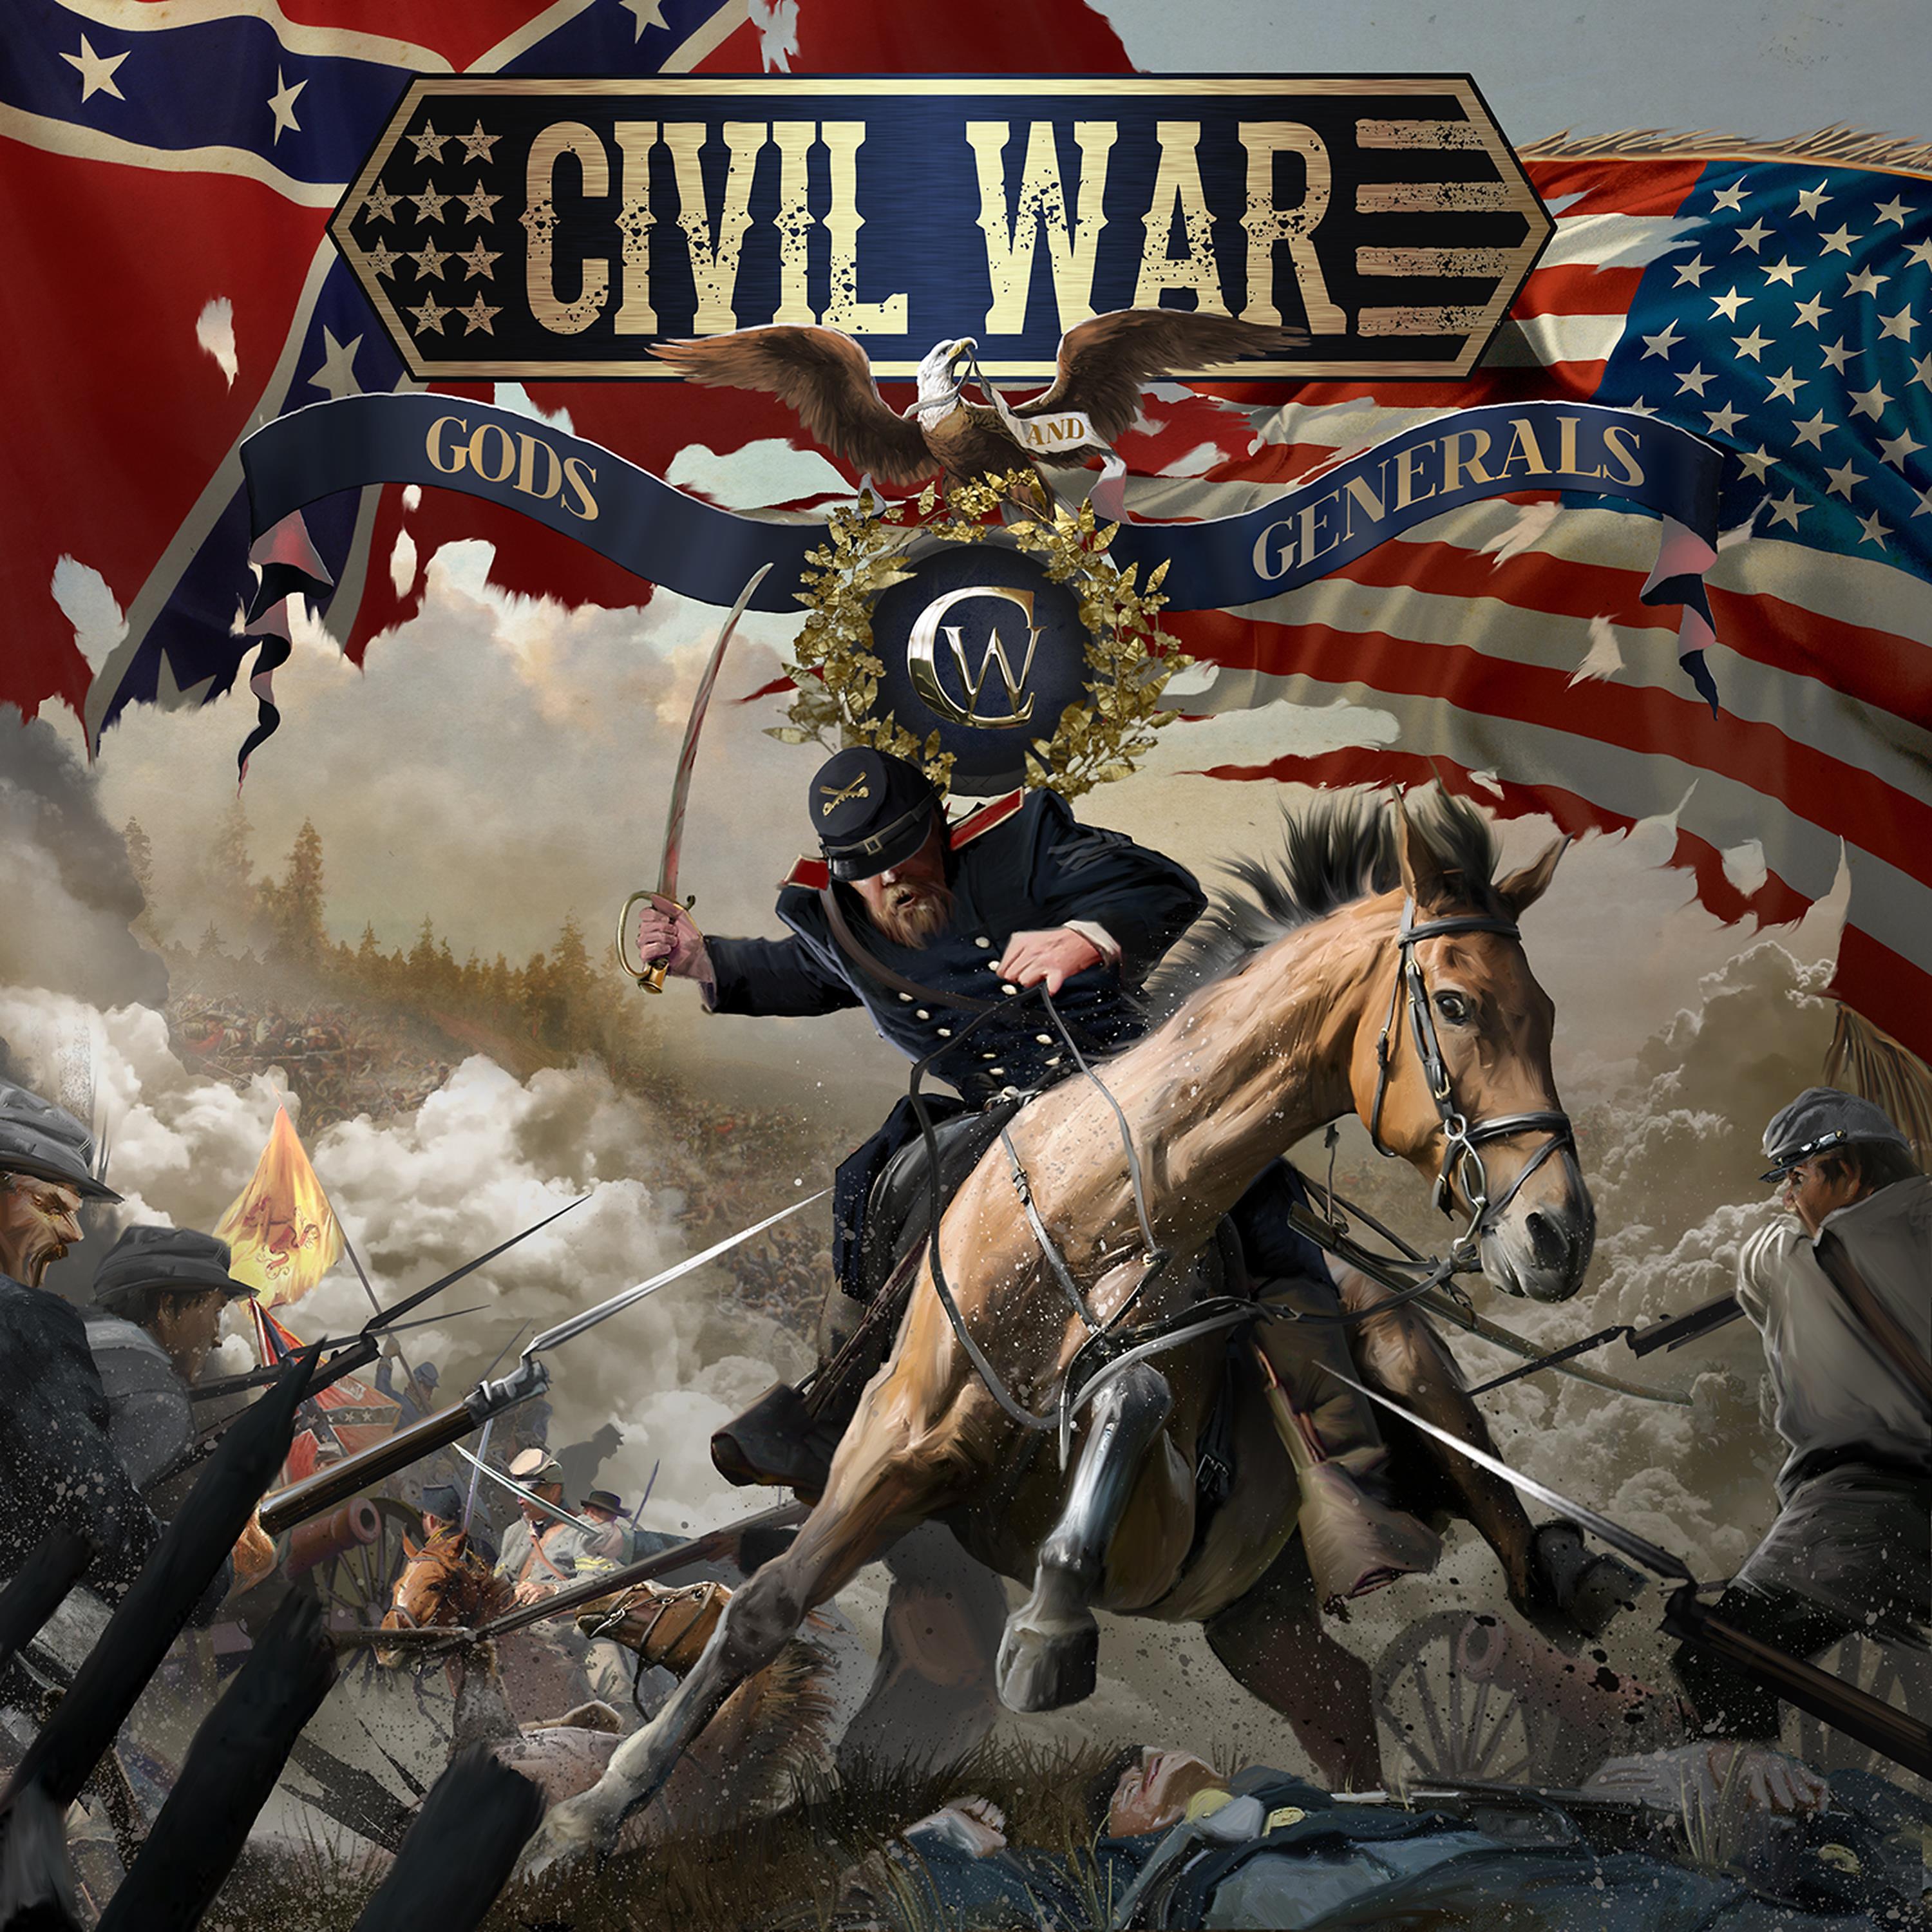 2 войны слушать. Civil War группа. Civil War Gods and Generals. Civil War группа обложки. Civil War 2012.